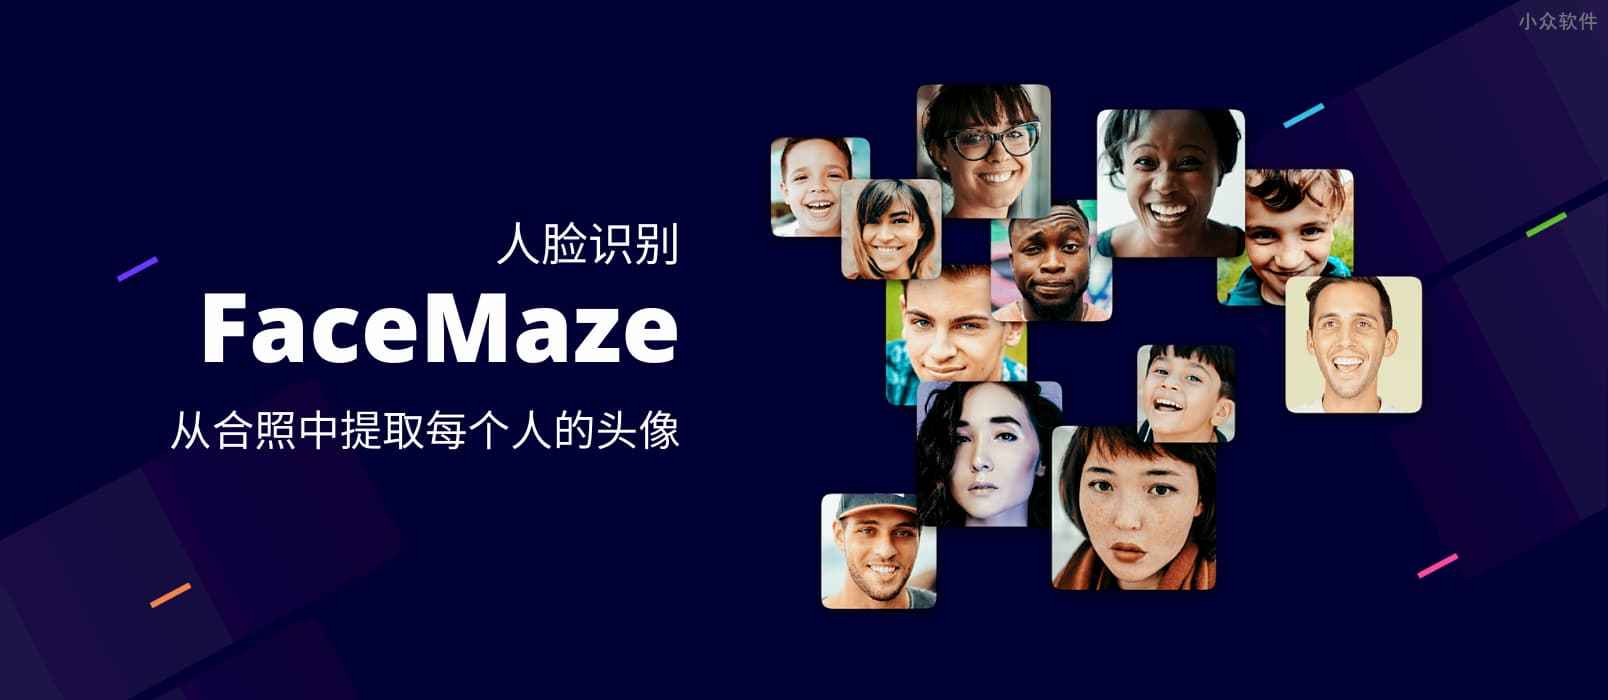 FaceMaze - 人脸识别，从合照中提取每个人的人脸头像 1